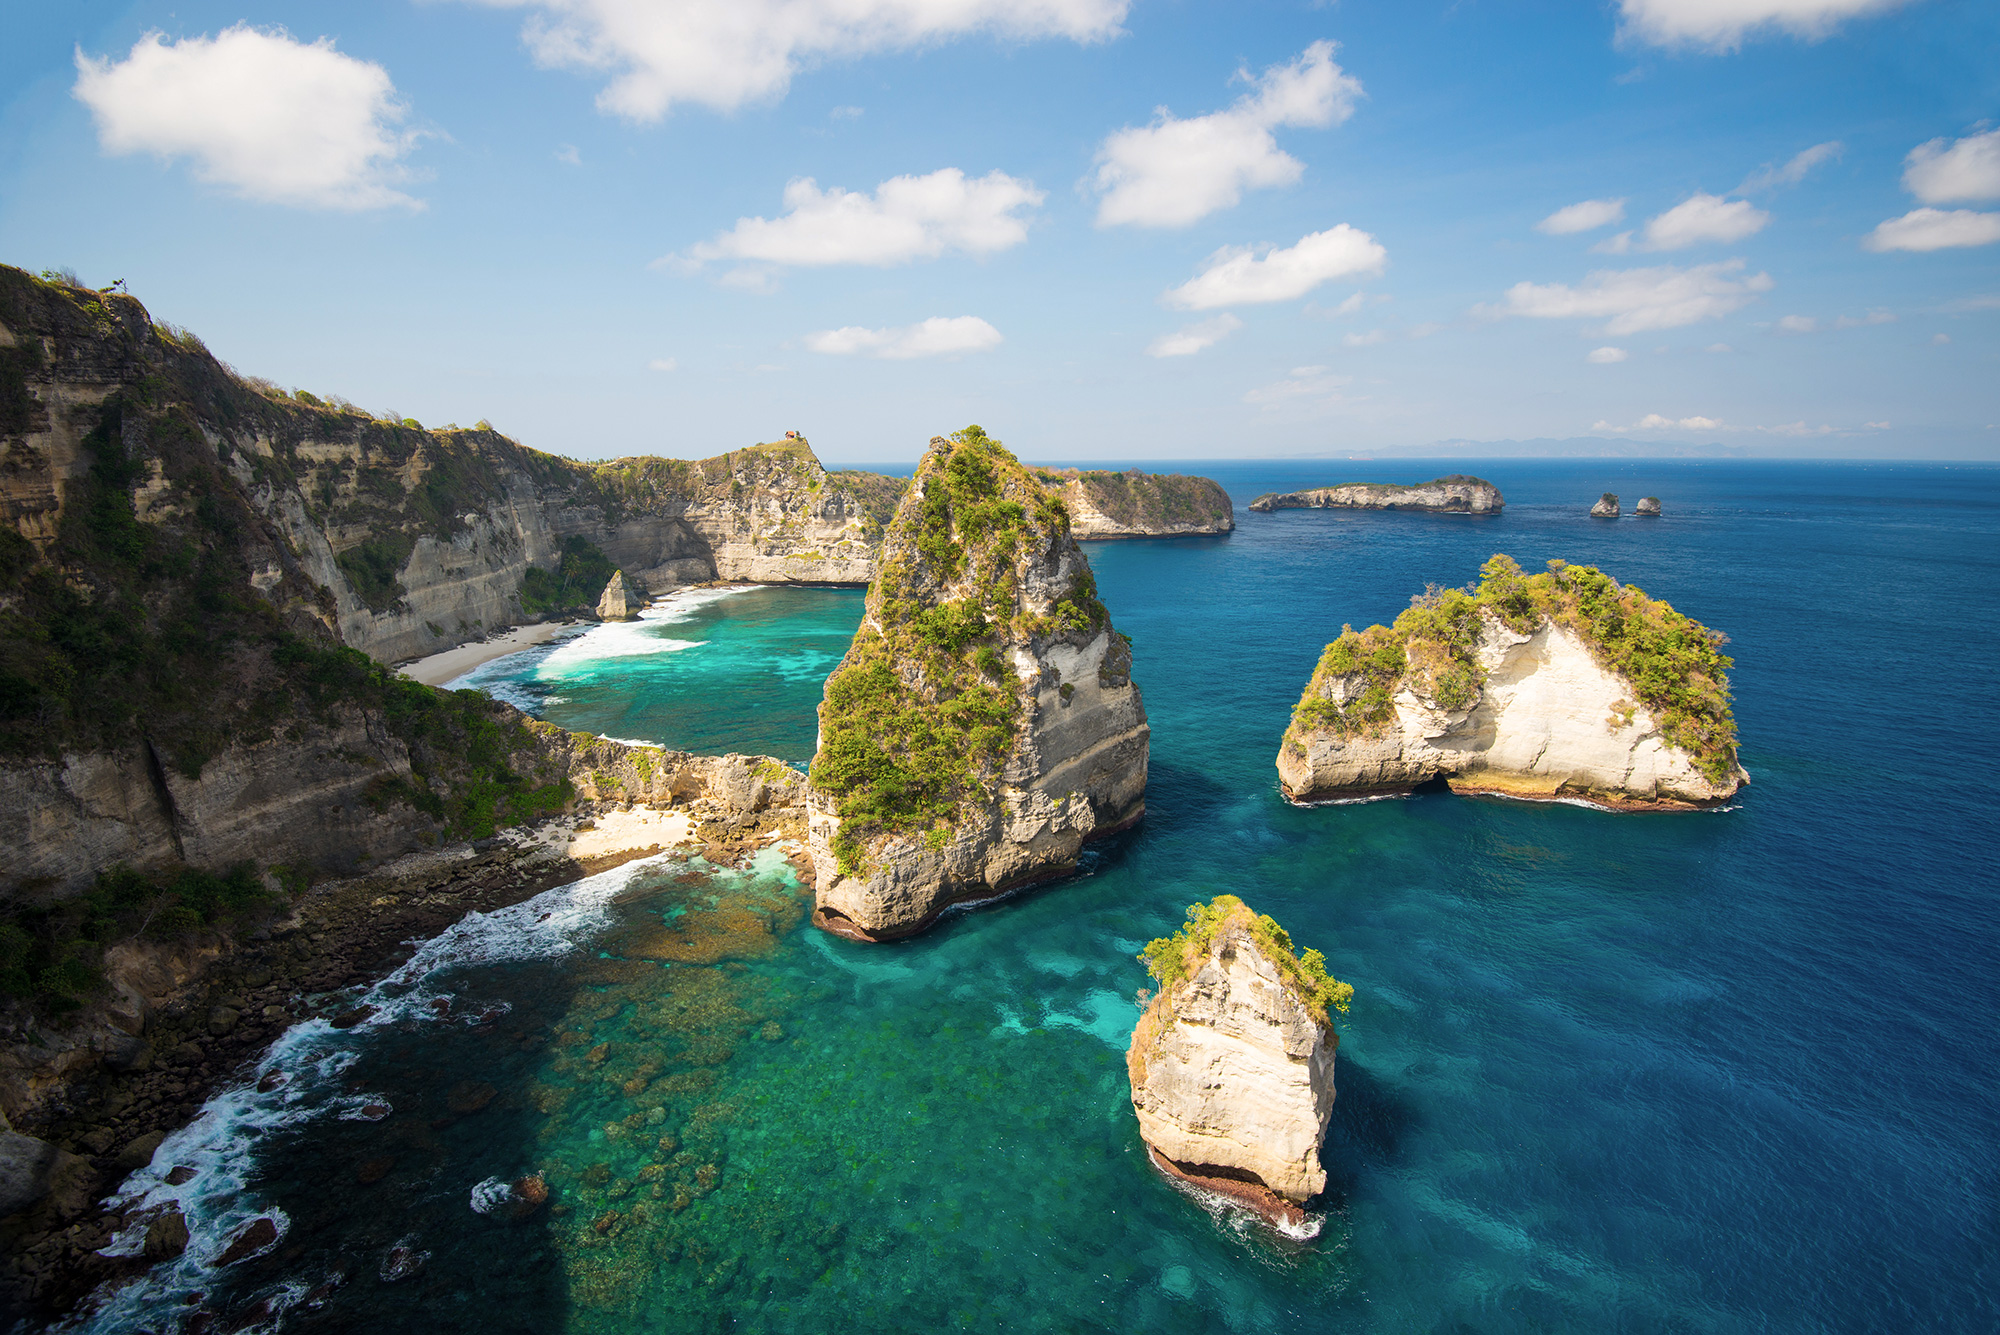  Nusa  Penida  l  le myst rieuse au large de Bali